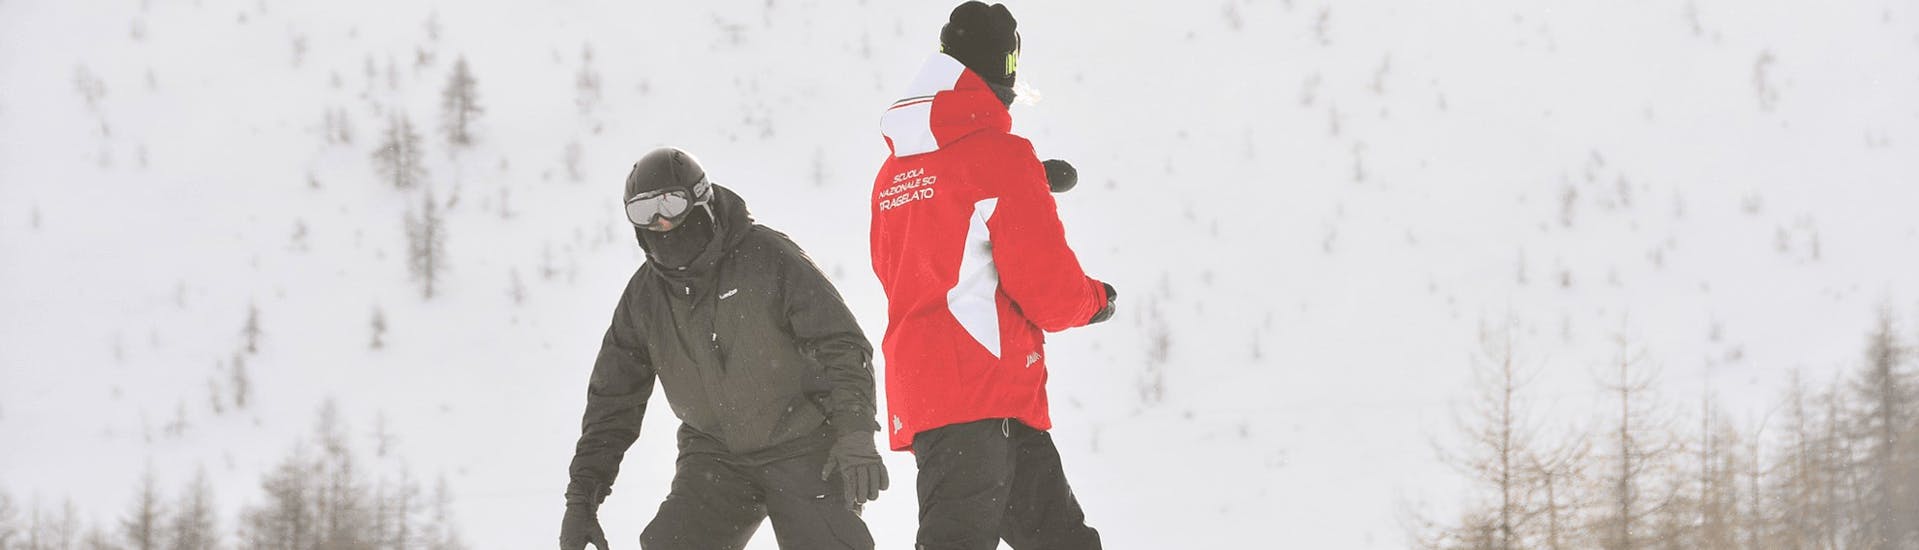 Moniteur de snowboard donnant des conseils à un participant à Pragelato lors d'une des cours particuliers de snowboard pour adultes de tous niveaux.